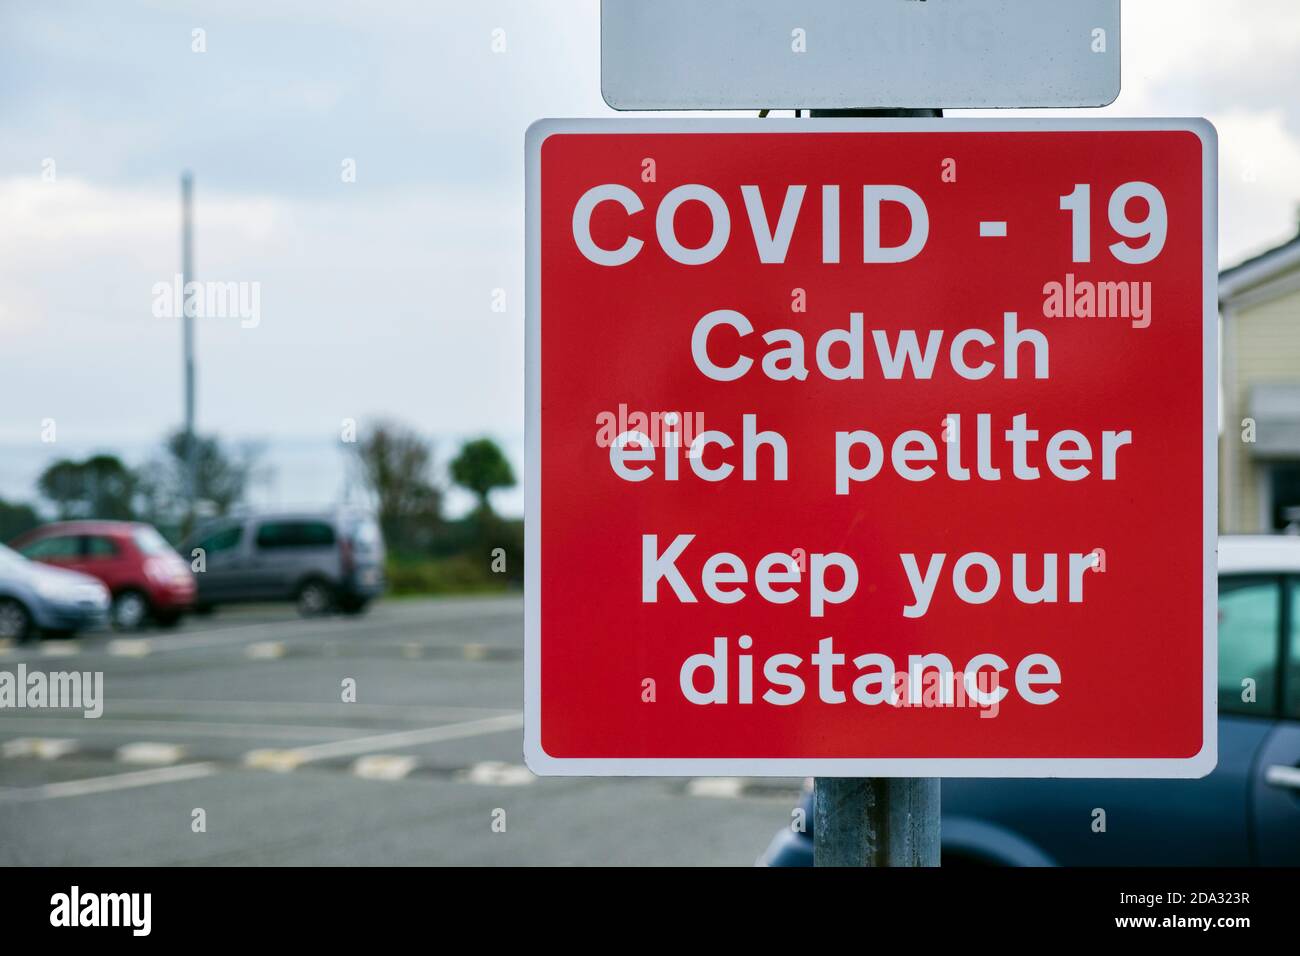 Coronavirus Pandemie Covid-19 zweisprachige Schilderwarnung Halten Sie Abstand in Englisch und Cadwch eich Pellter in Walisisch. Anglesey North Wales Großbritannien Stockfoto